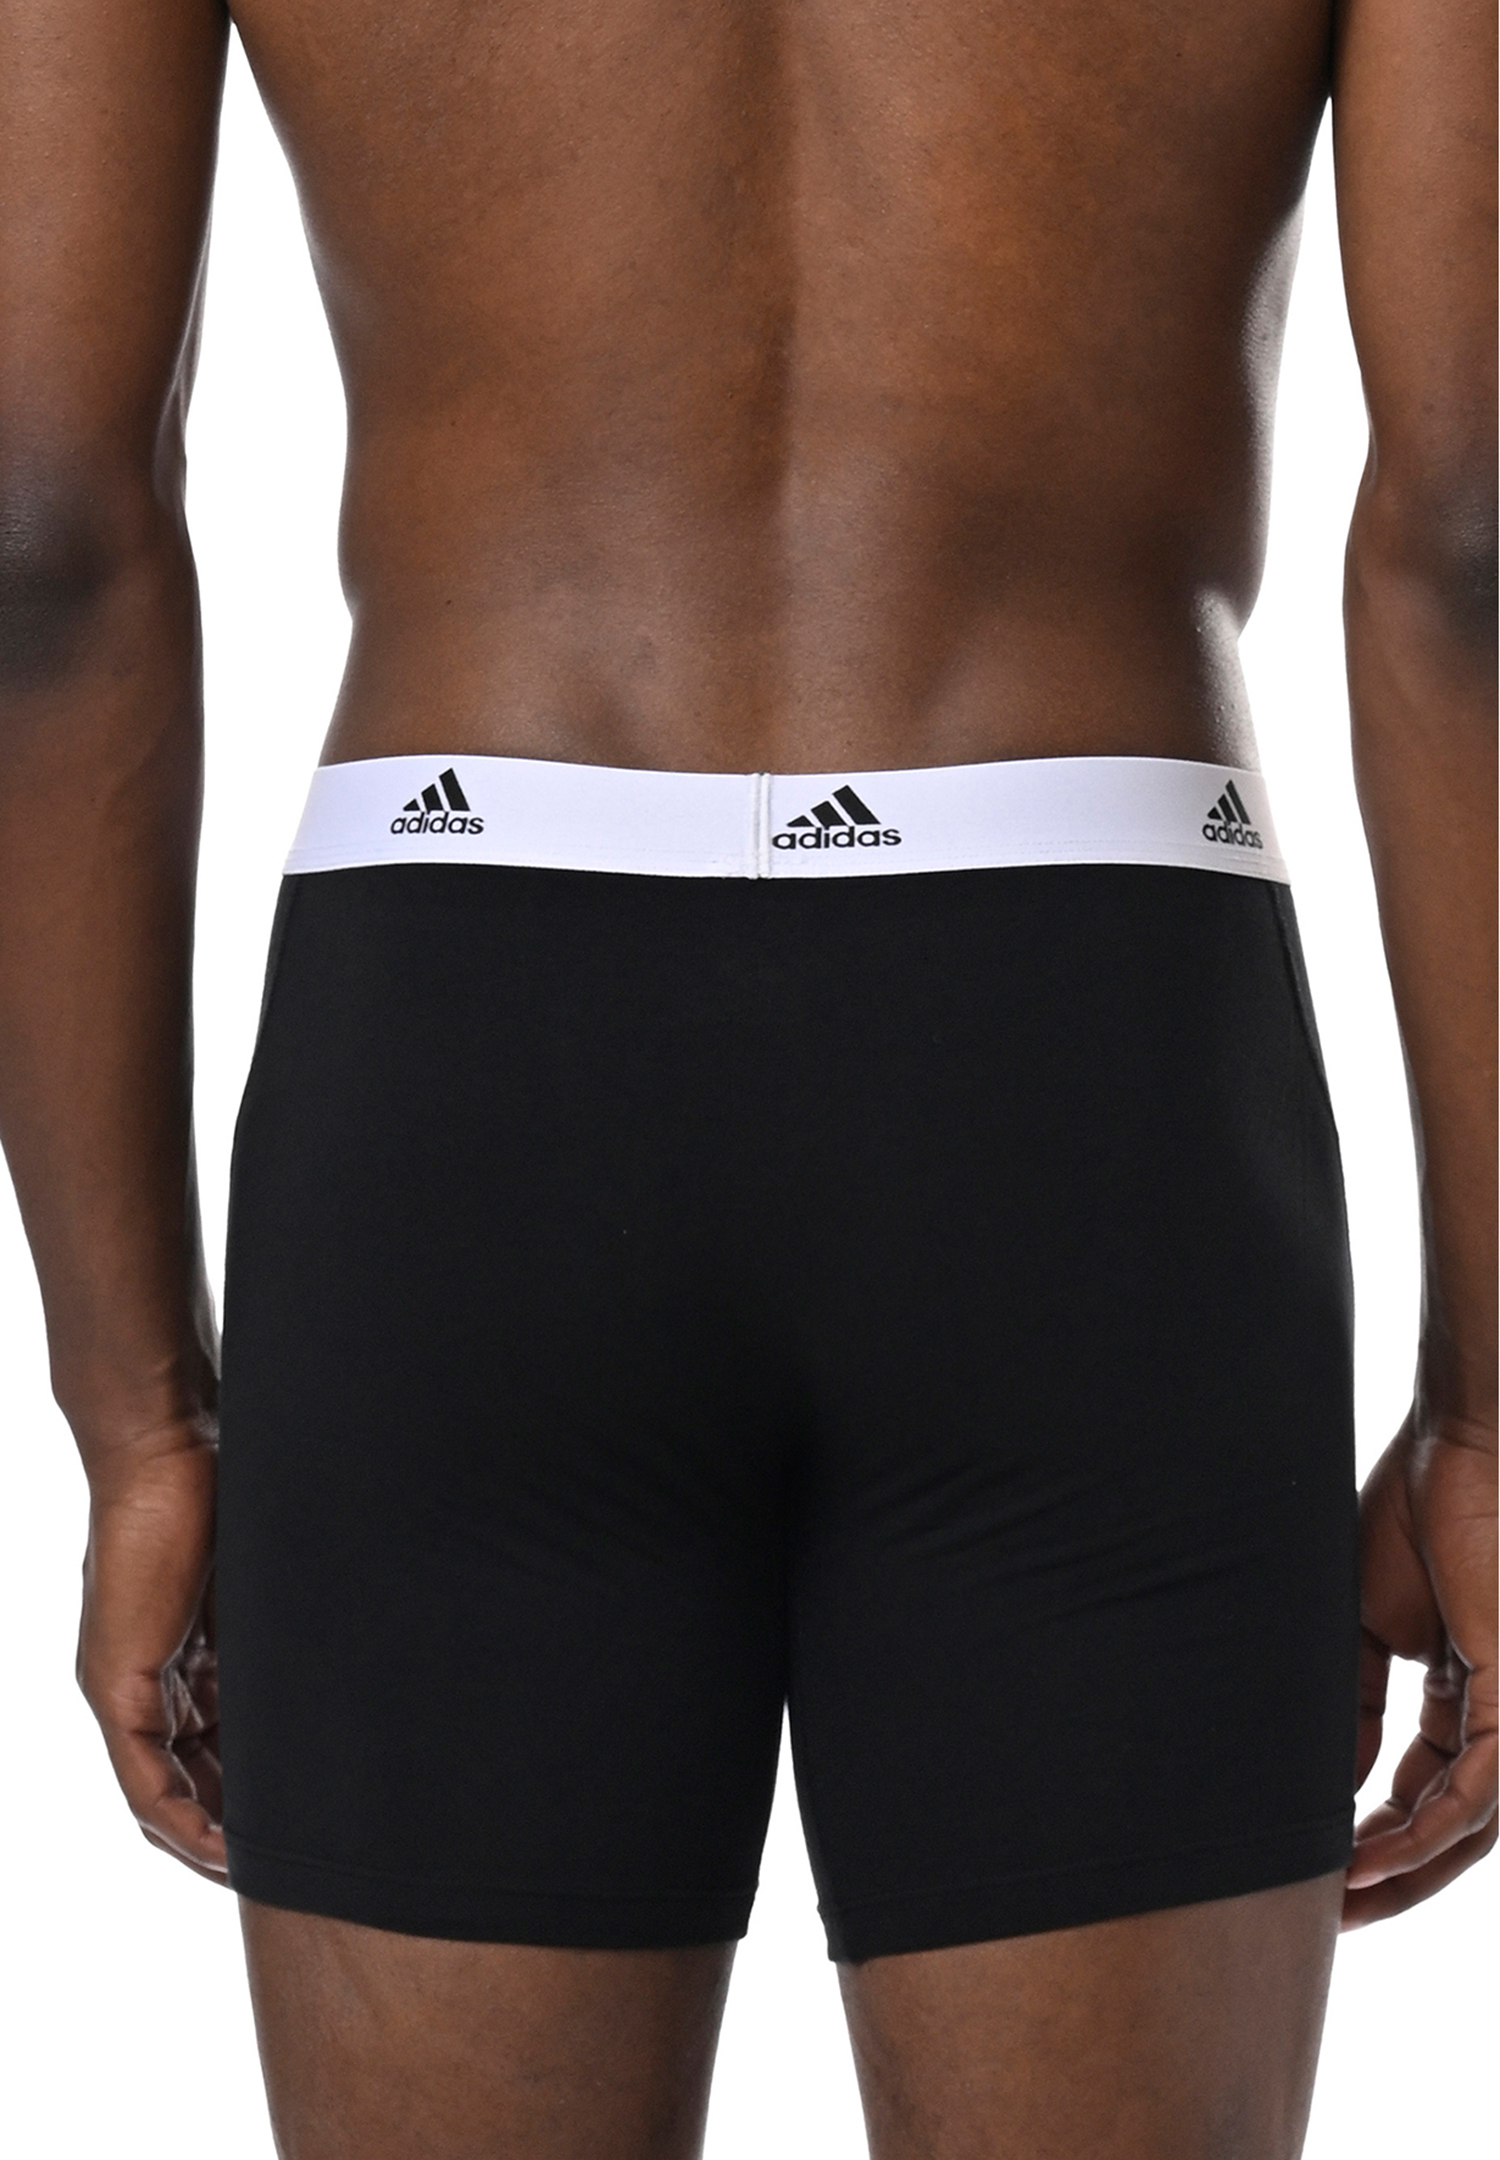 Adidas Basic Boxer Brief Men Herren Unterhose Shorts Unterwäsche 6er Pack